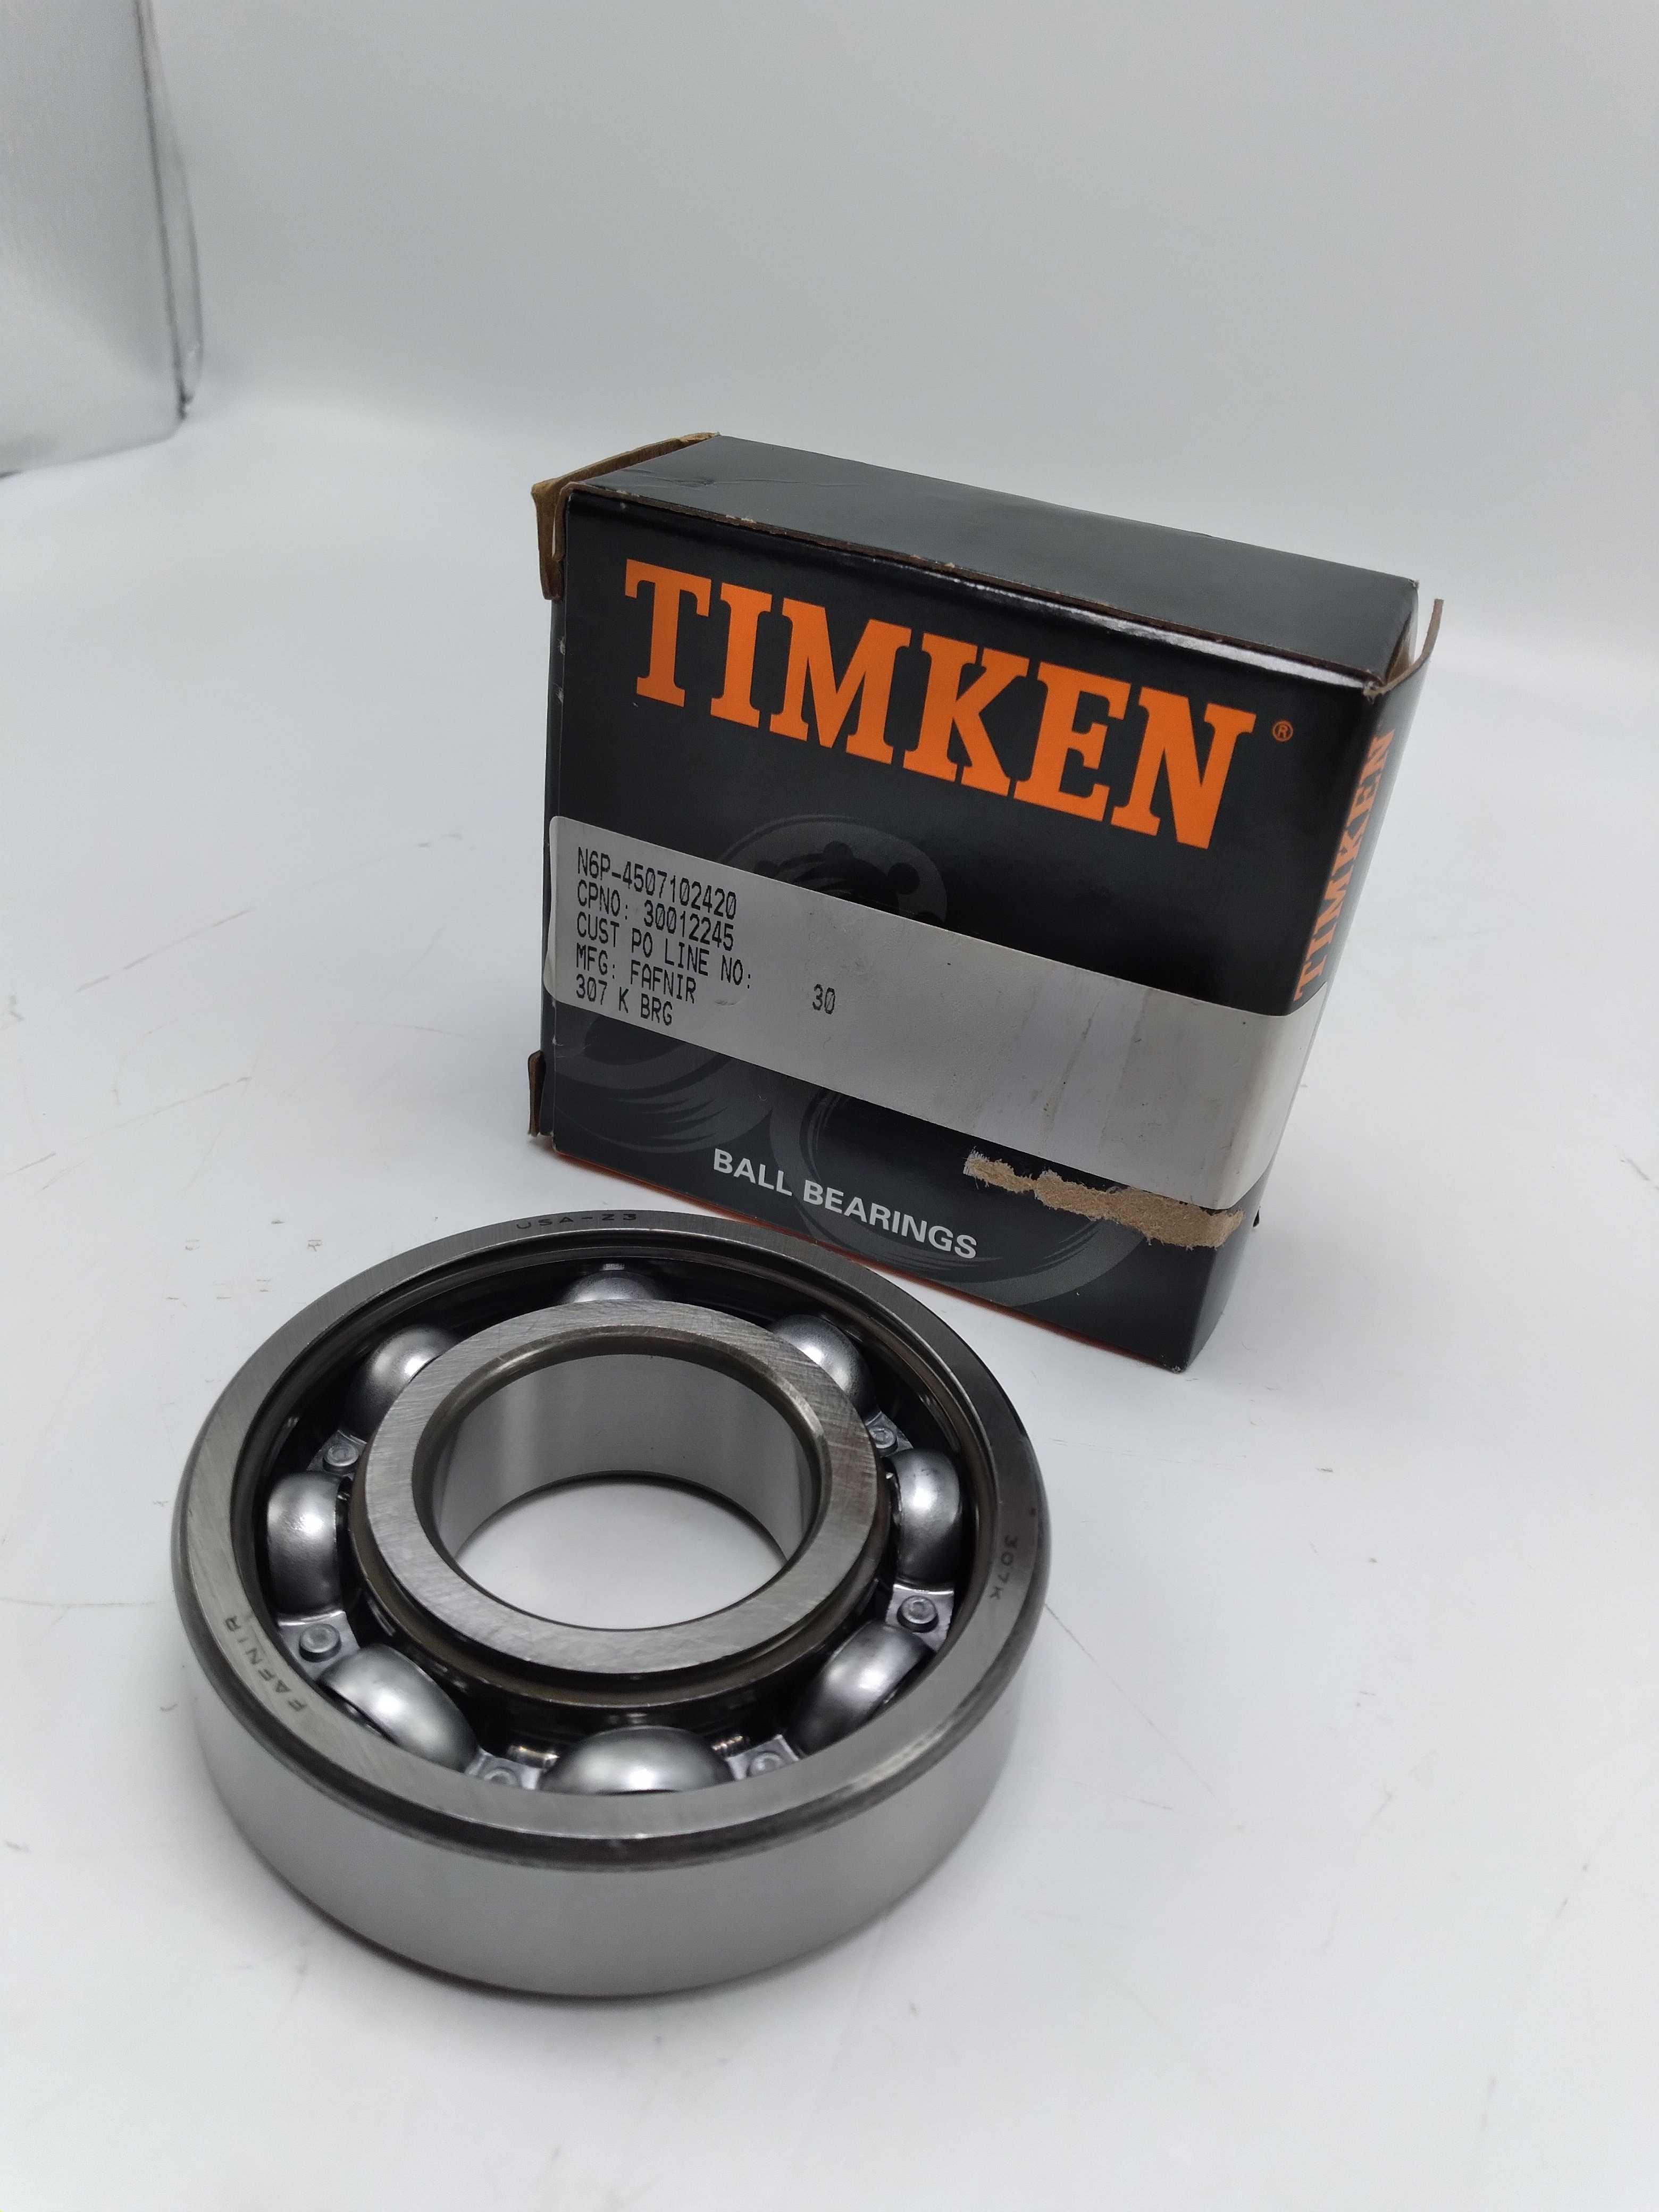 NEW Timken/Fafnir 307K Ball Bearing 